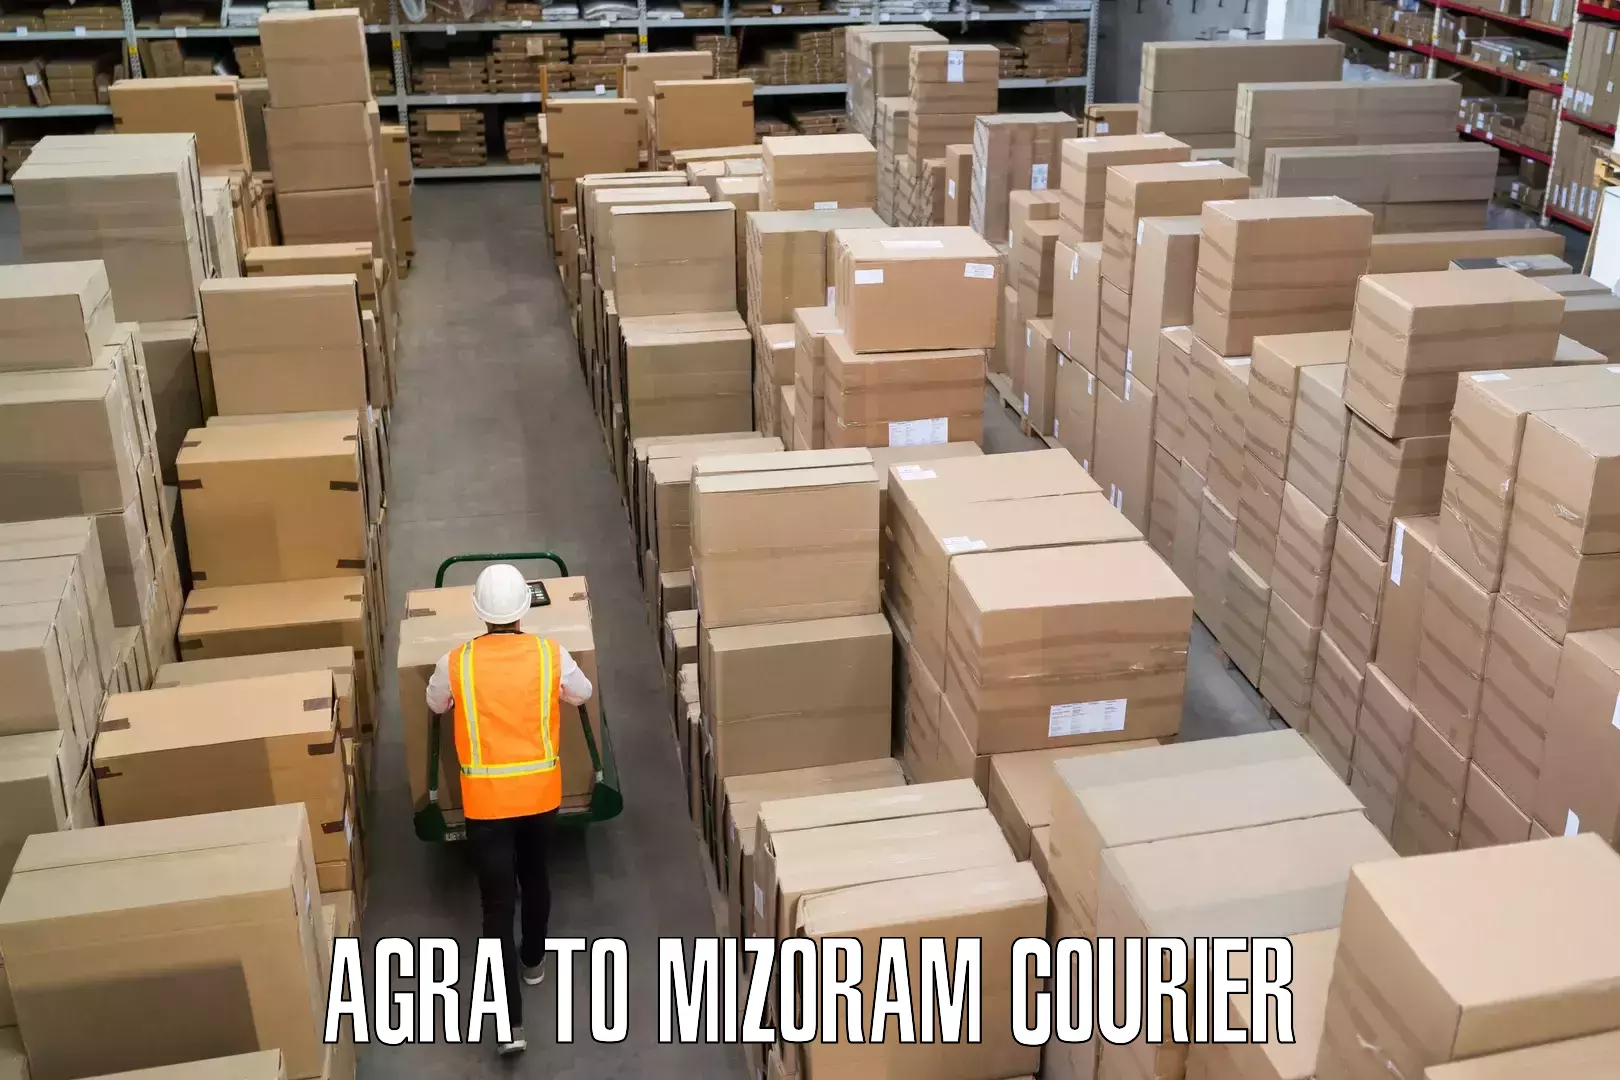 Baggage transport professionals Agra to Mizoram